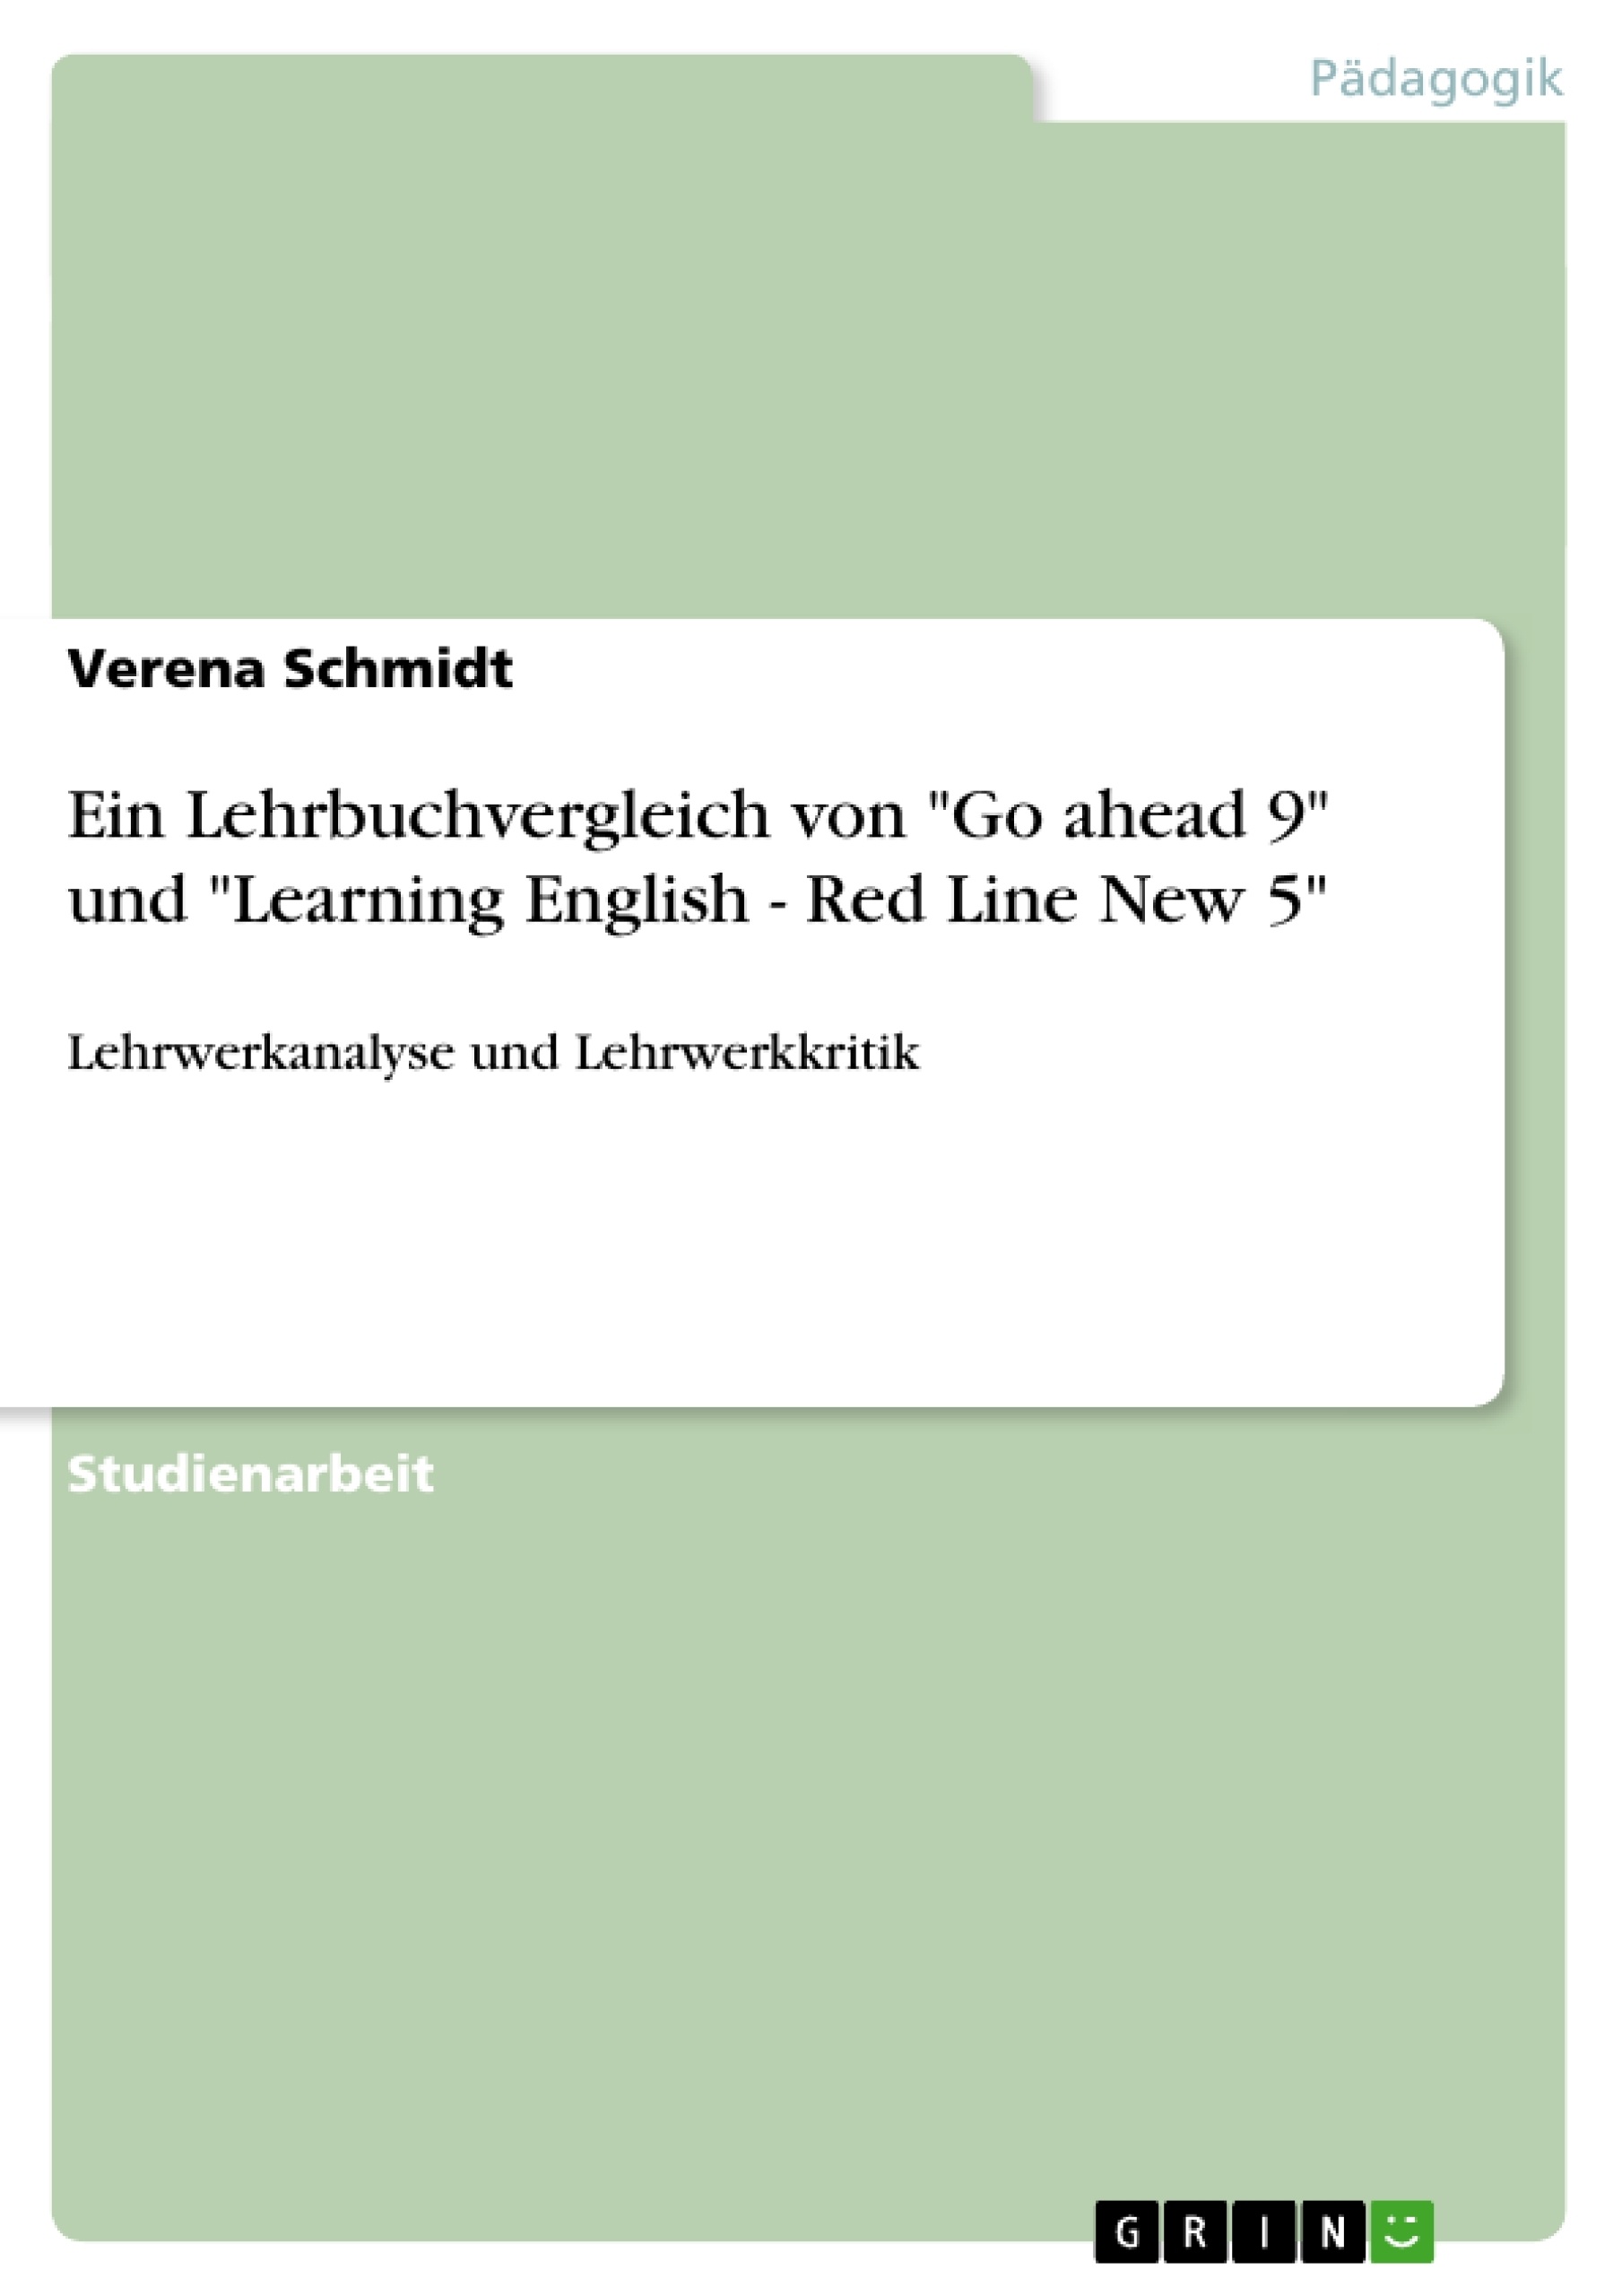 Titre: Ein Lehrbuchvergleich von "Go ahead 9" und "Learning English - Red Line New 5"